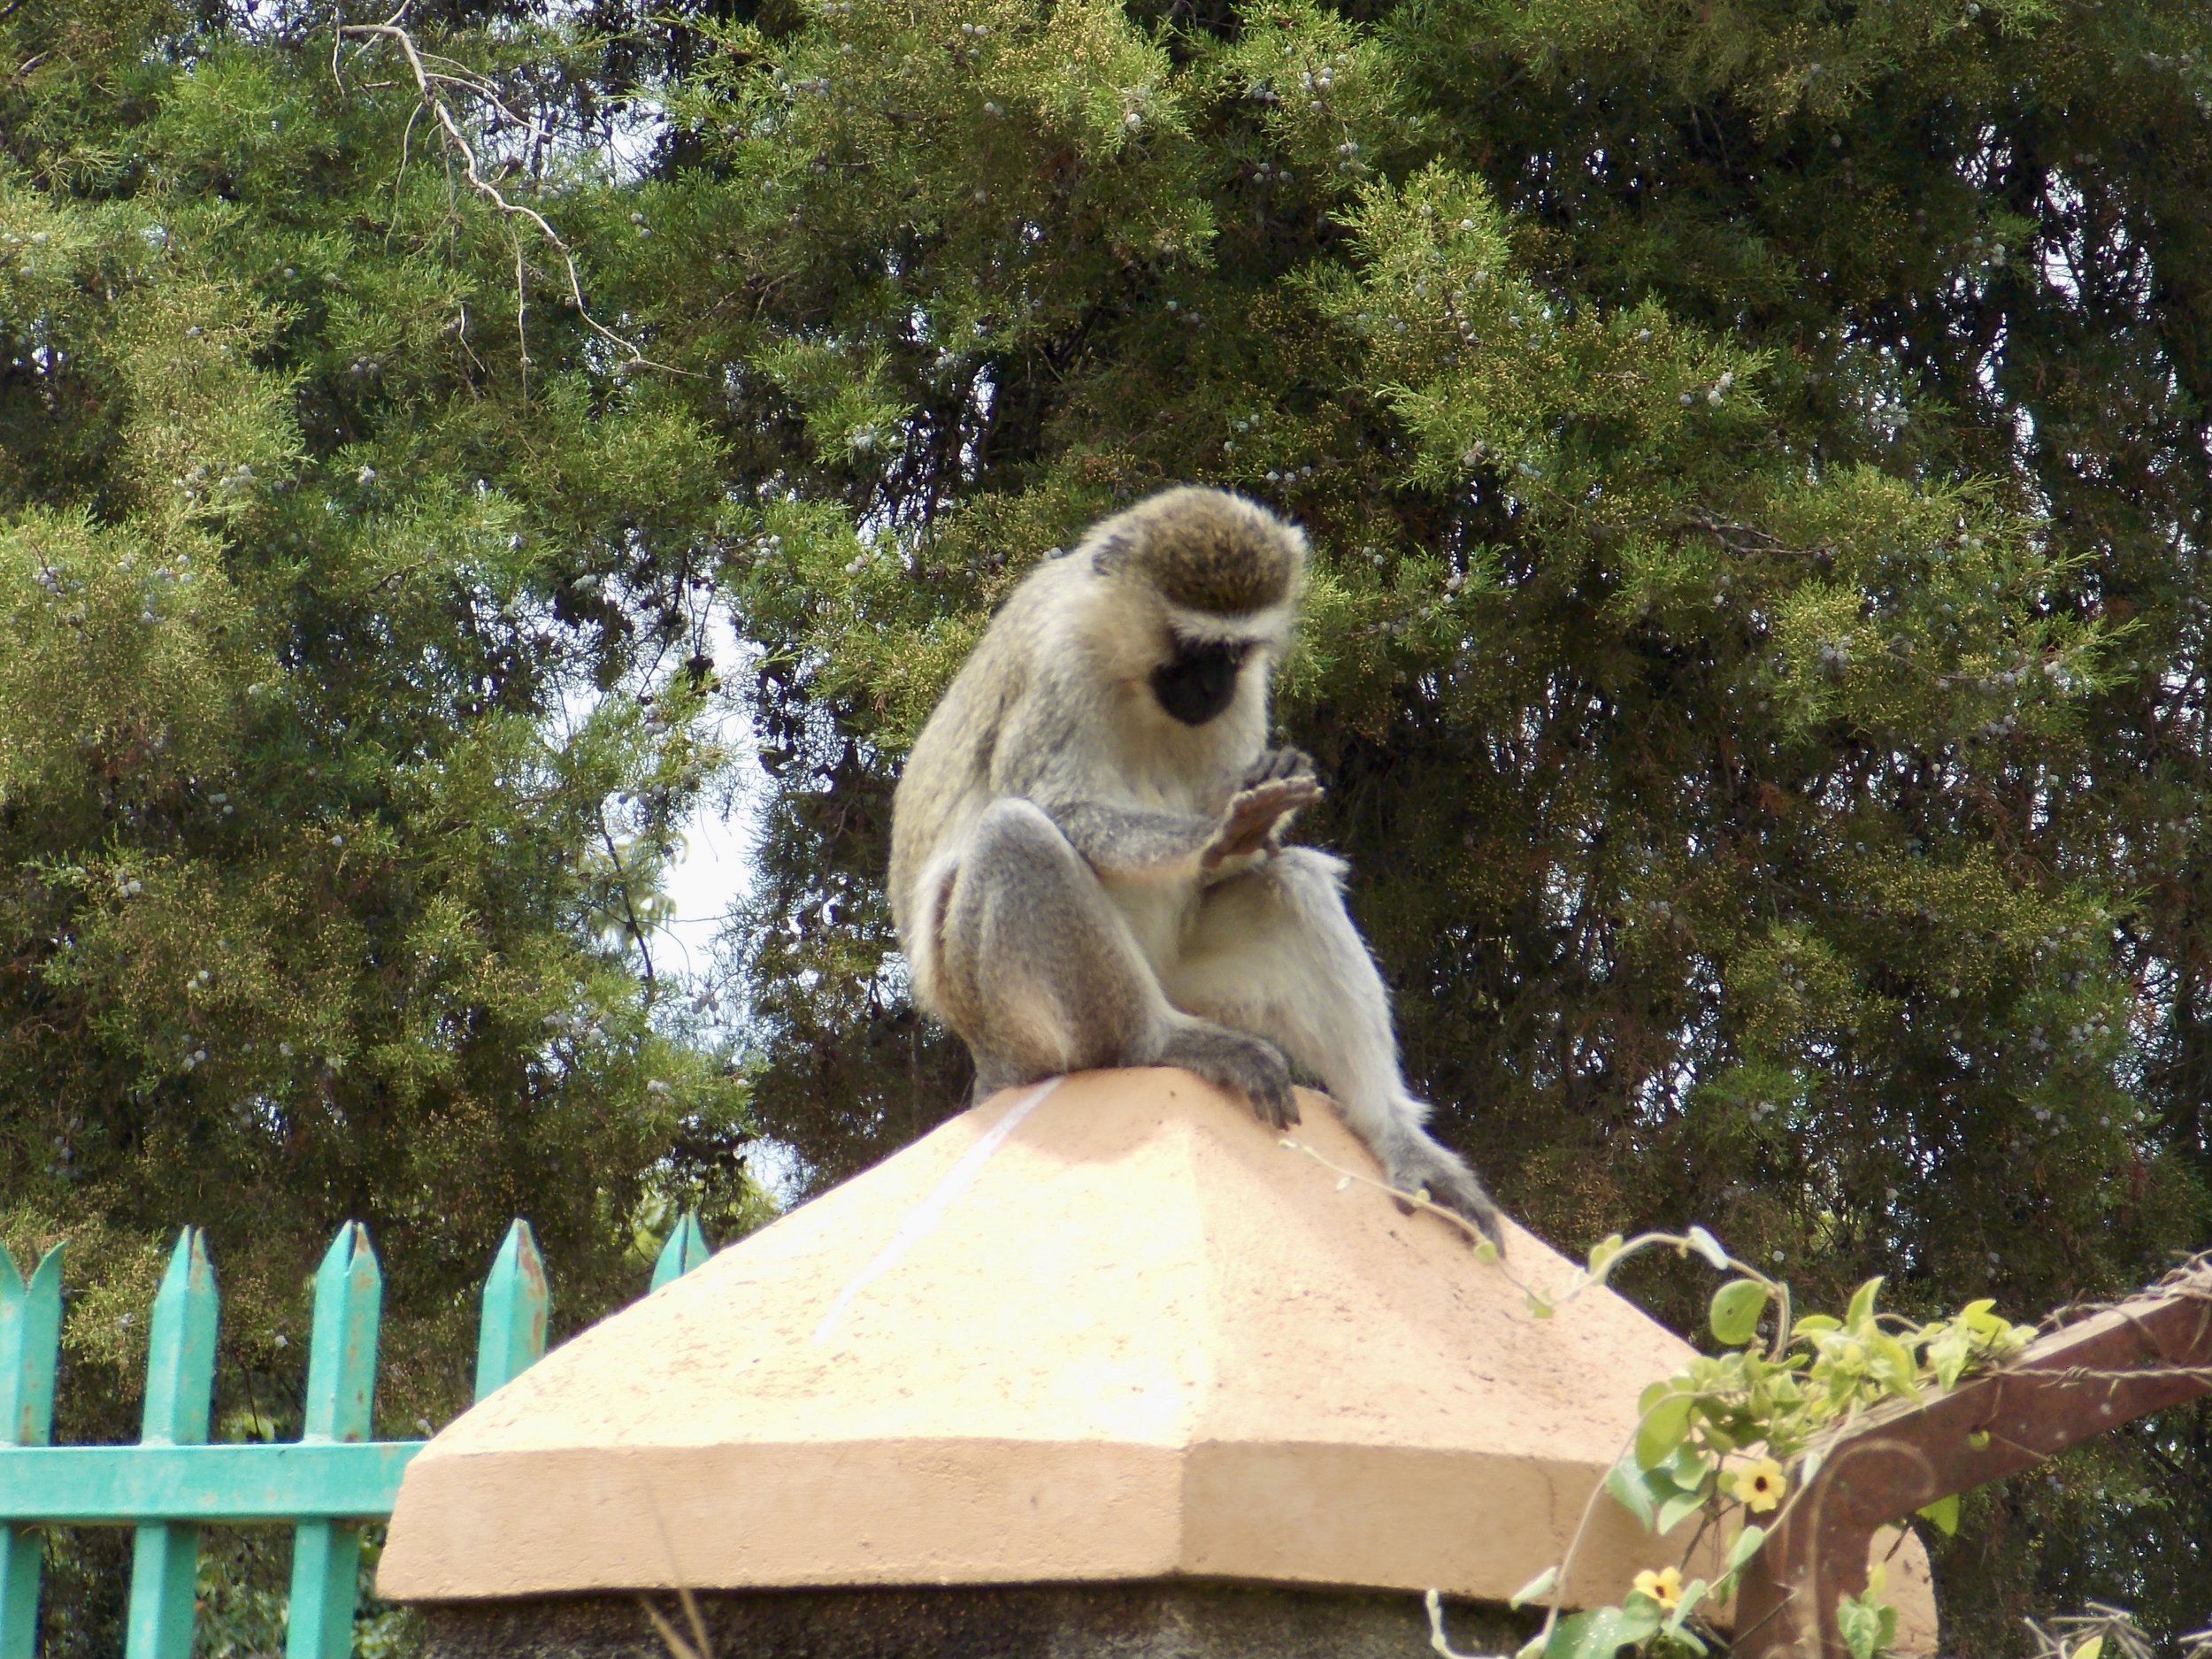 Karyn Anderson (2022) "Vervet monkey checking out their fingers, near Lake Nabugabo, Uganda"